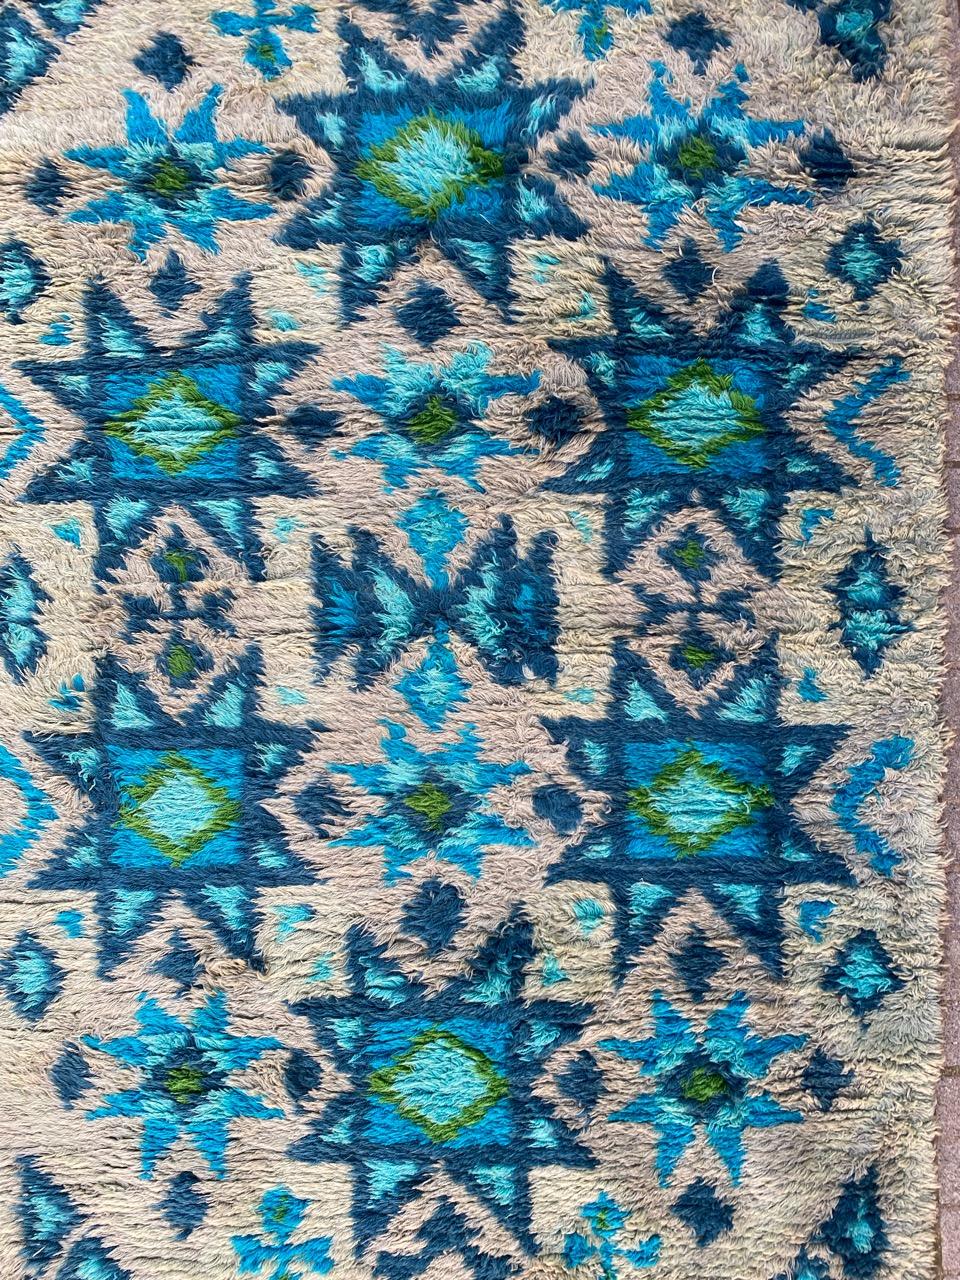 Sehr schöner skandinavischer Vintage-Teppich mit schönem geometrischem Muster und schönen Farben, (ich kann ihn keinem Designer zuordnen, da das Label fehlt), komplett handgeknüpft mit Wollsamt auf Baumwollgrund.

✨✨✨
